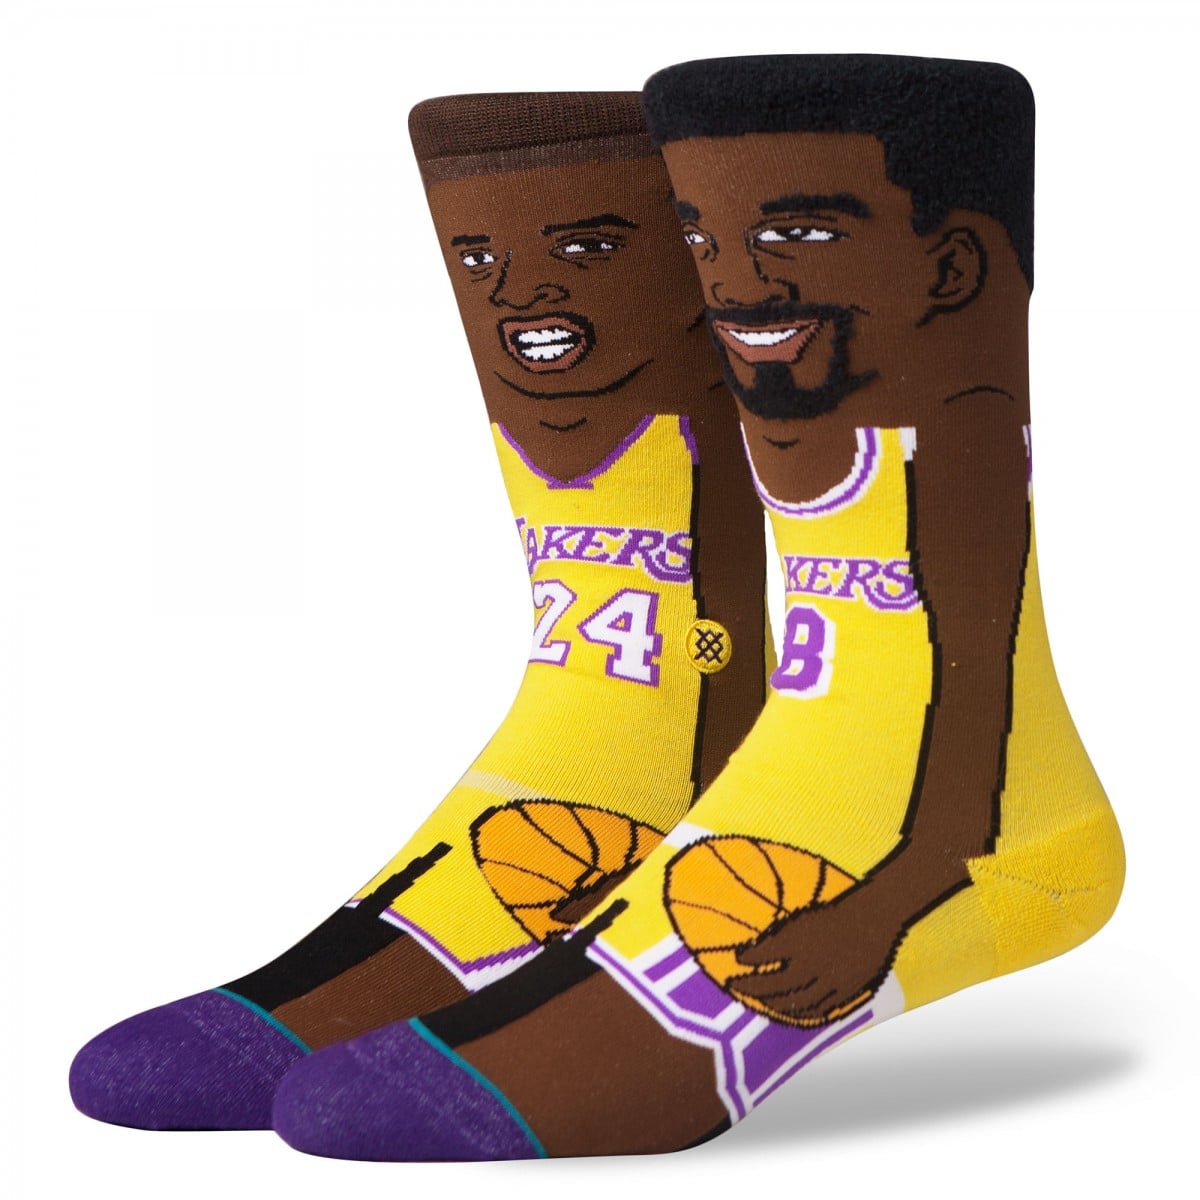 STANCE 襪子 - NBA K. Bryant 卡通款 男襪 - M545B16KBR 6